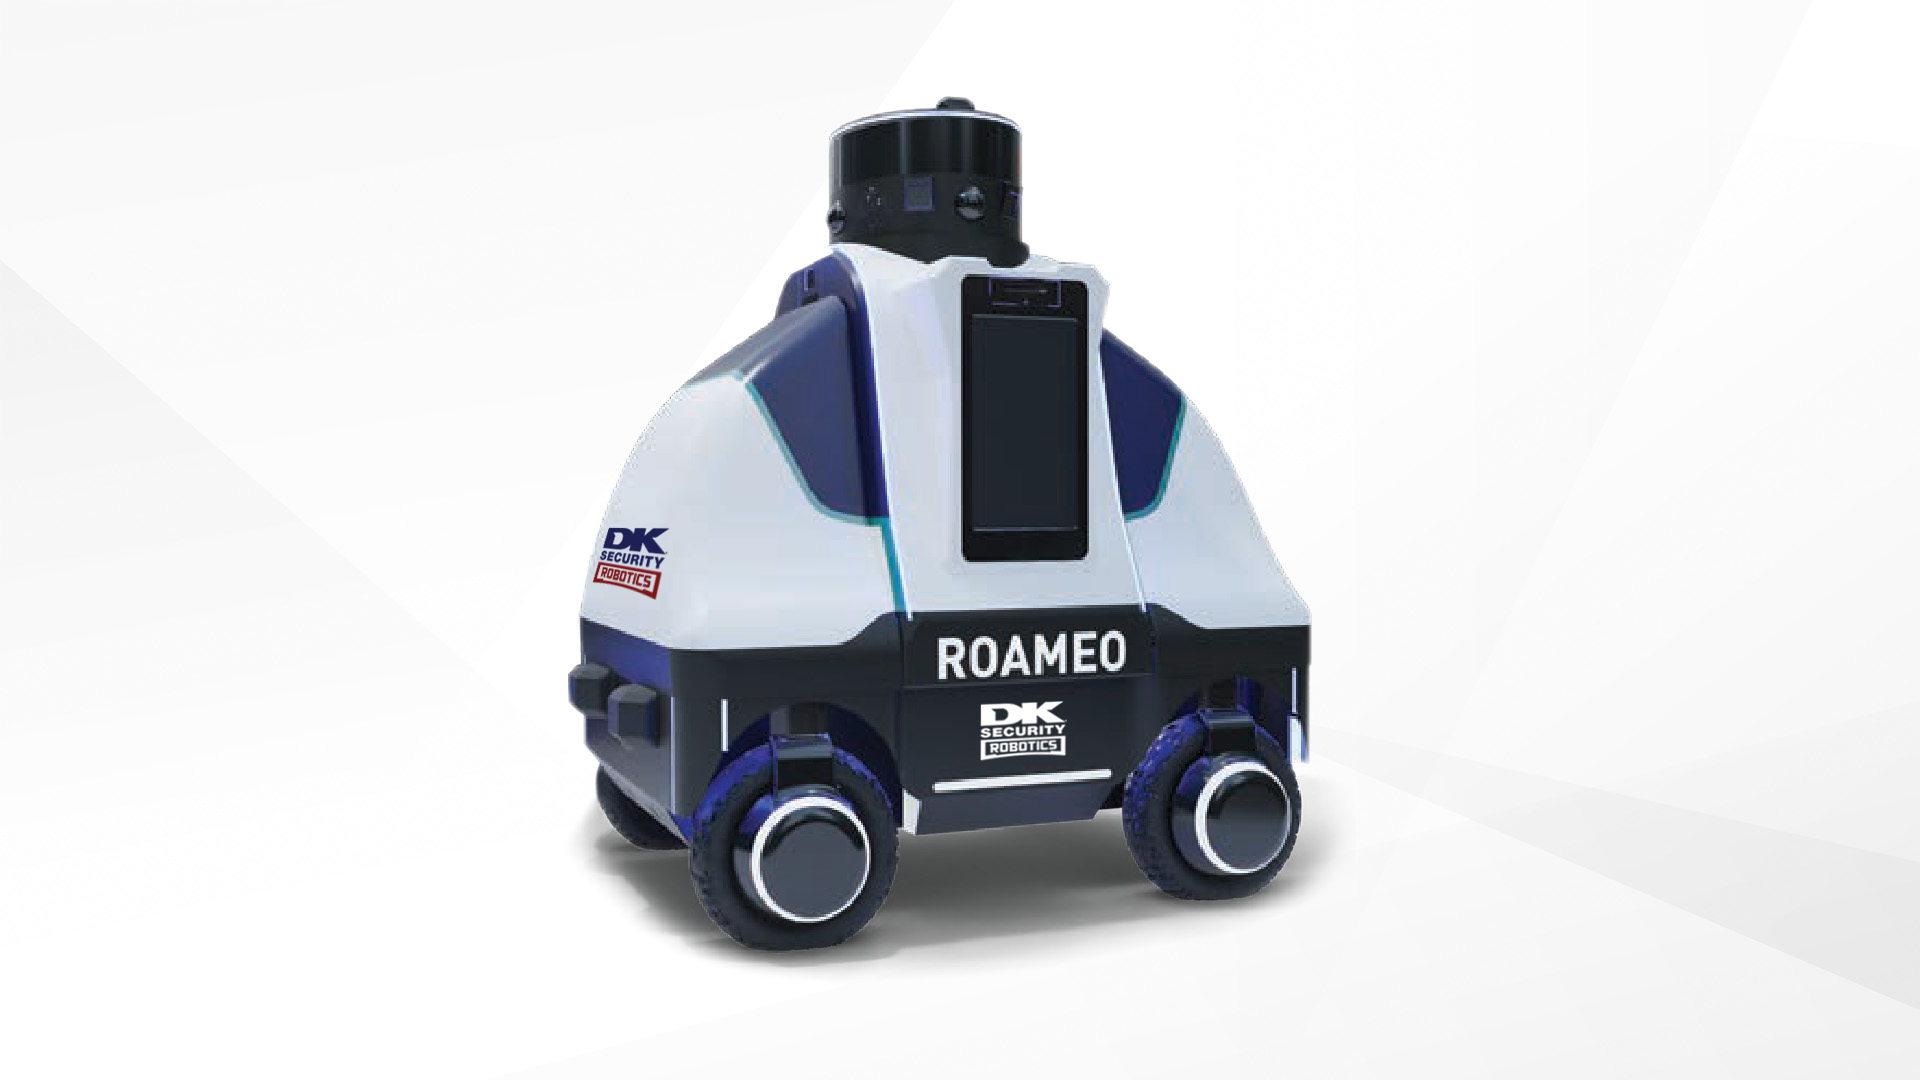 dk_robotics_roameo